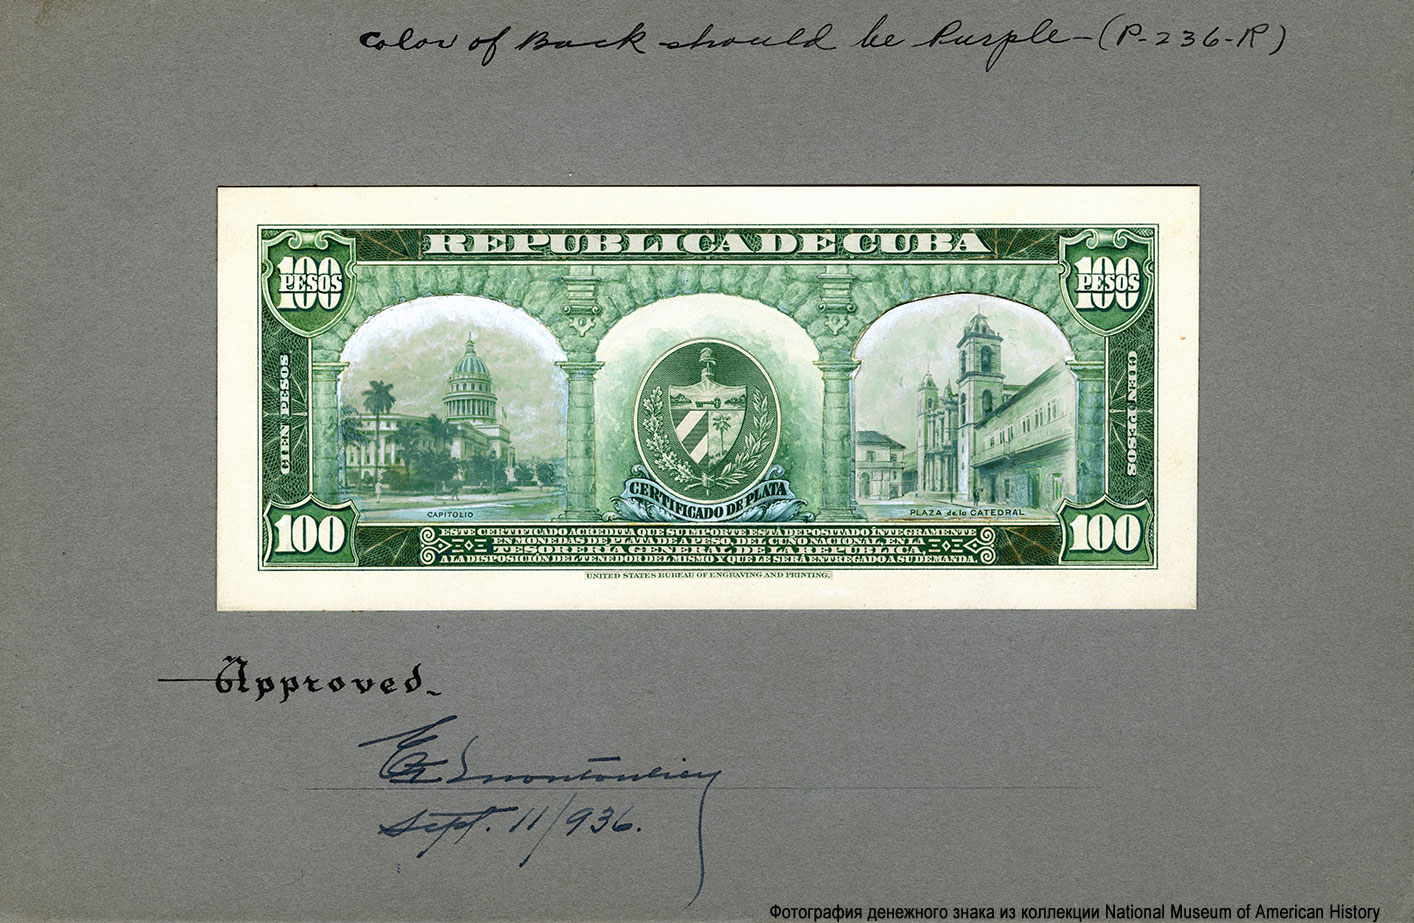 República de Cuba 100 Pesos. Progress Proofs of BEP issued Silver Certificates